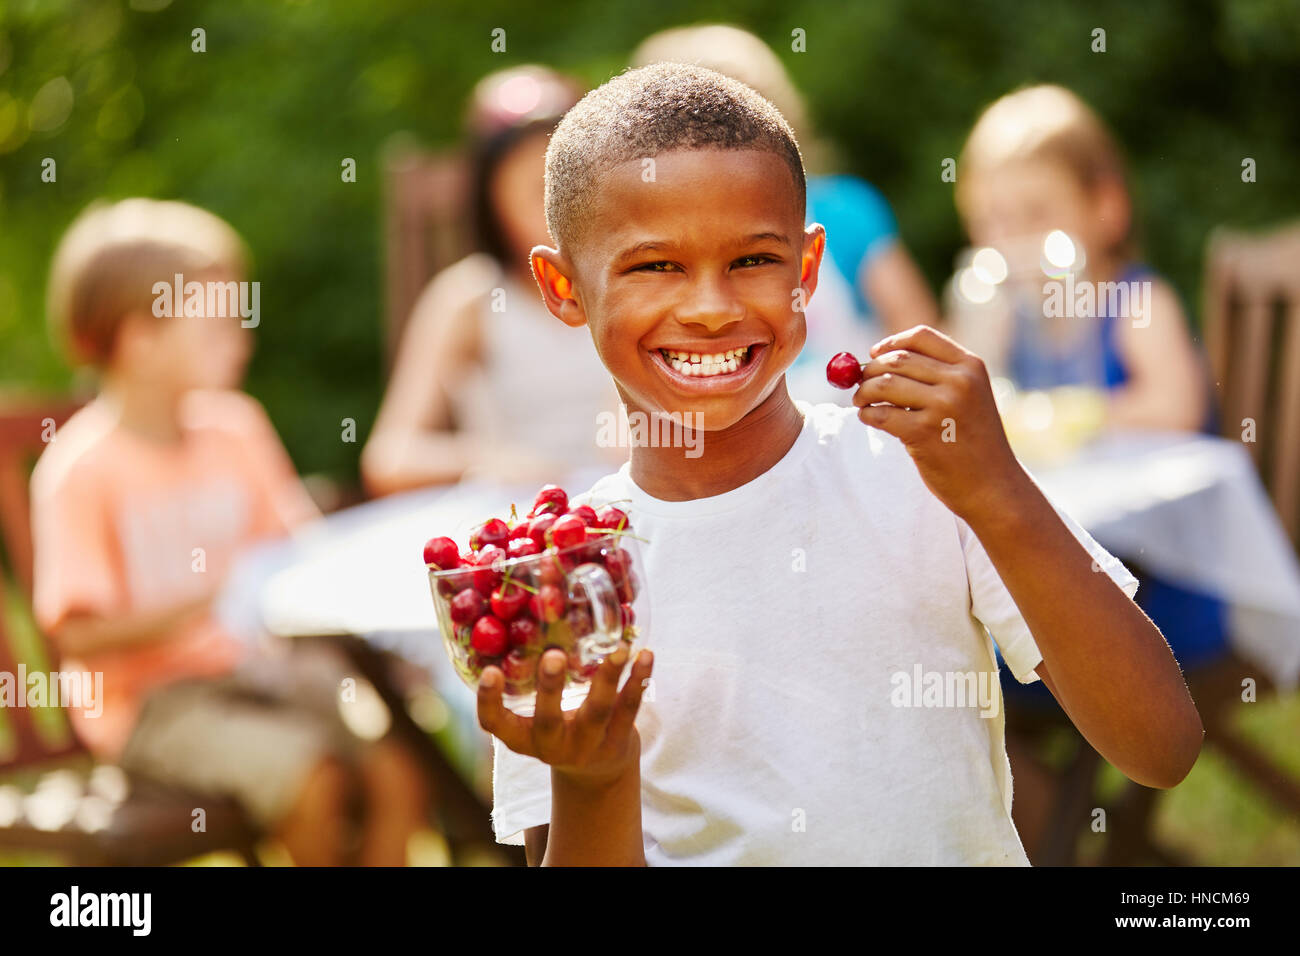 Afrikanische junge isst reichen Vitamine Kirschen lachen vor Freude Stockfoto